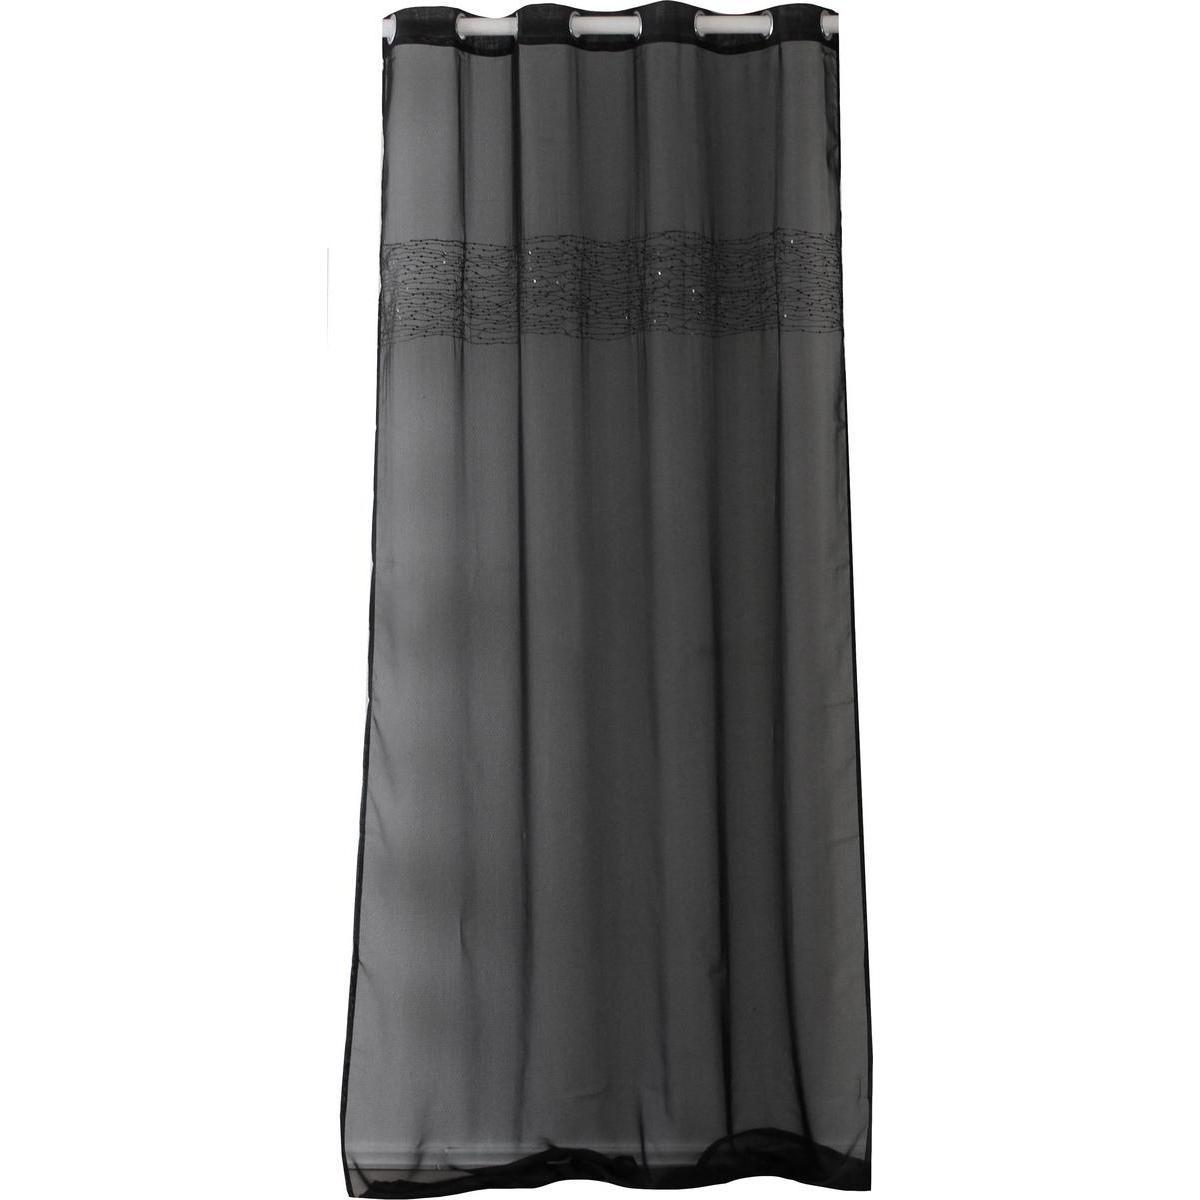 Voilage à œillets - 100 % Polyester - 140 x 260 cm - Noir avec bandeau à œillets